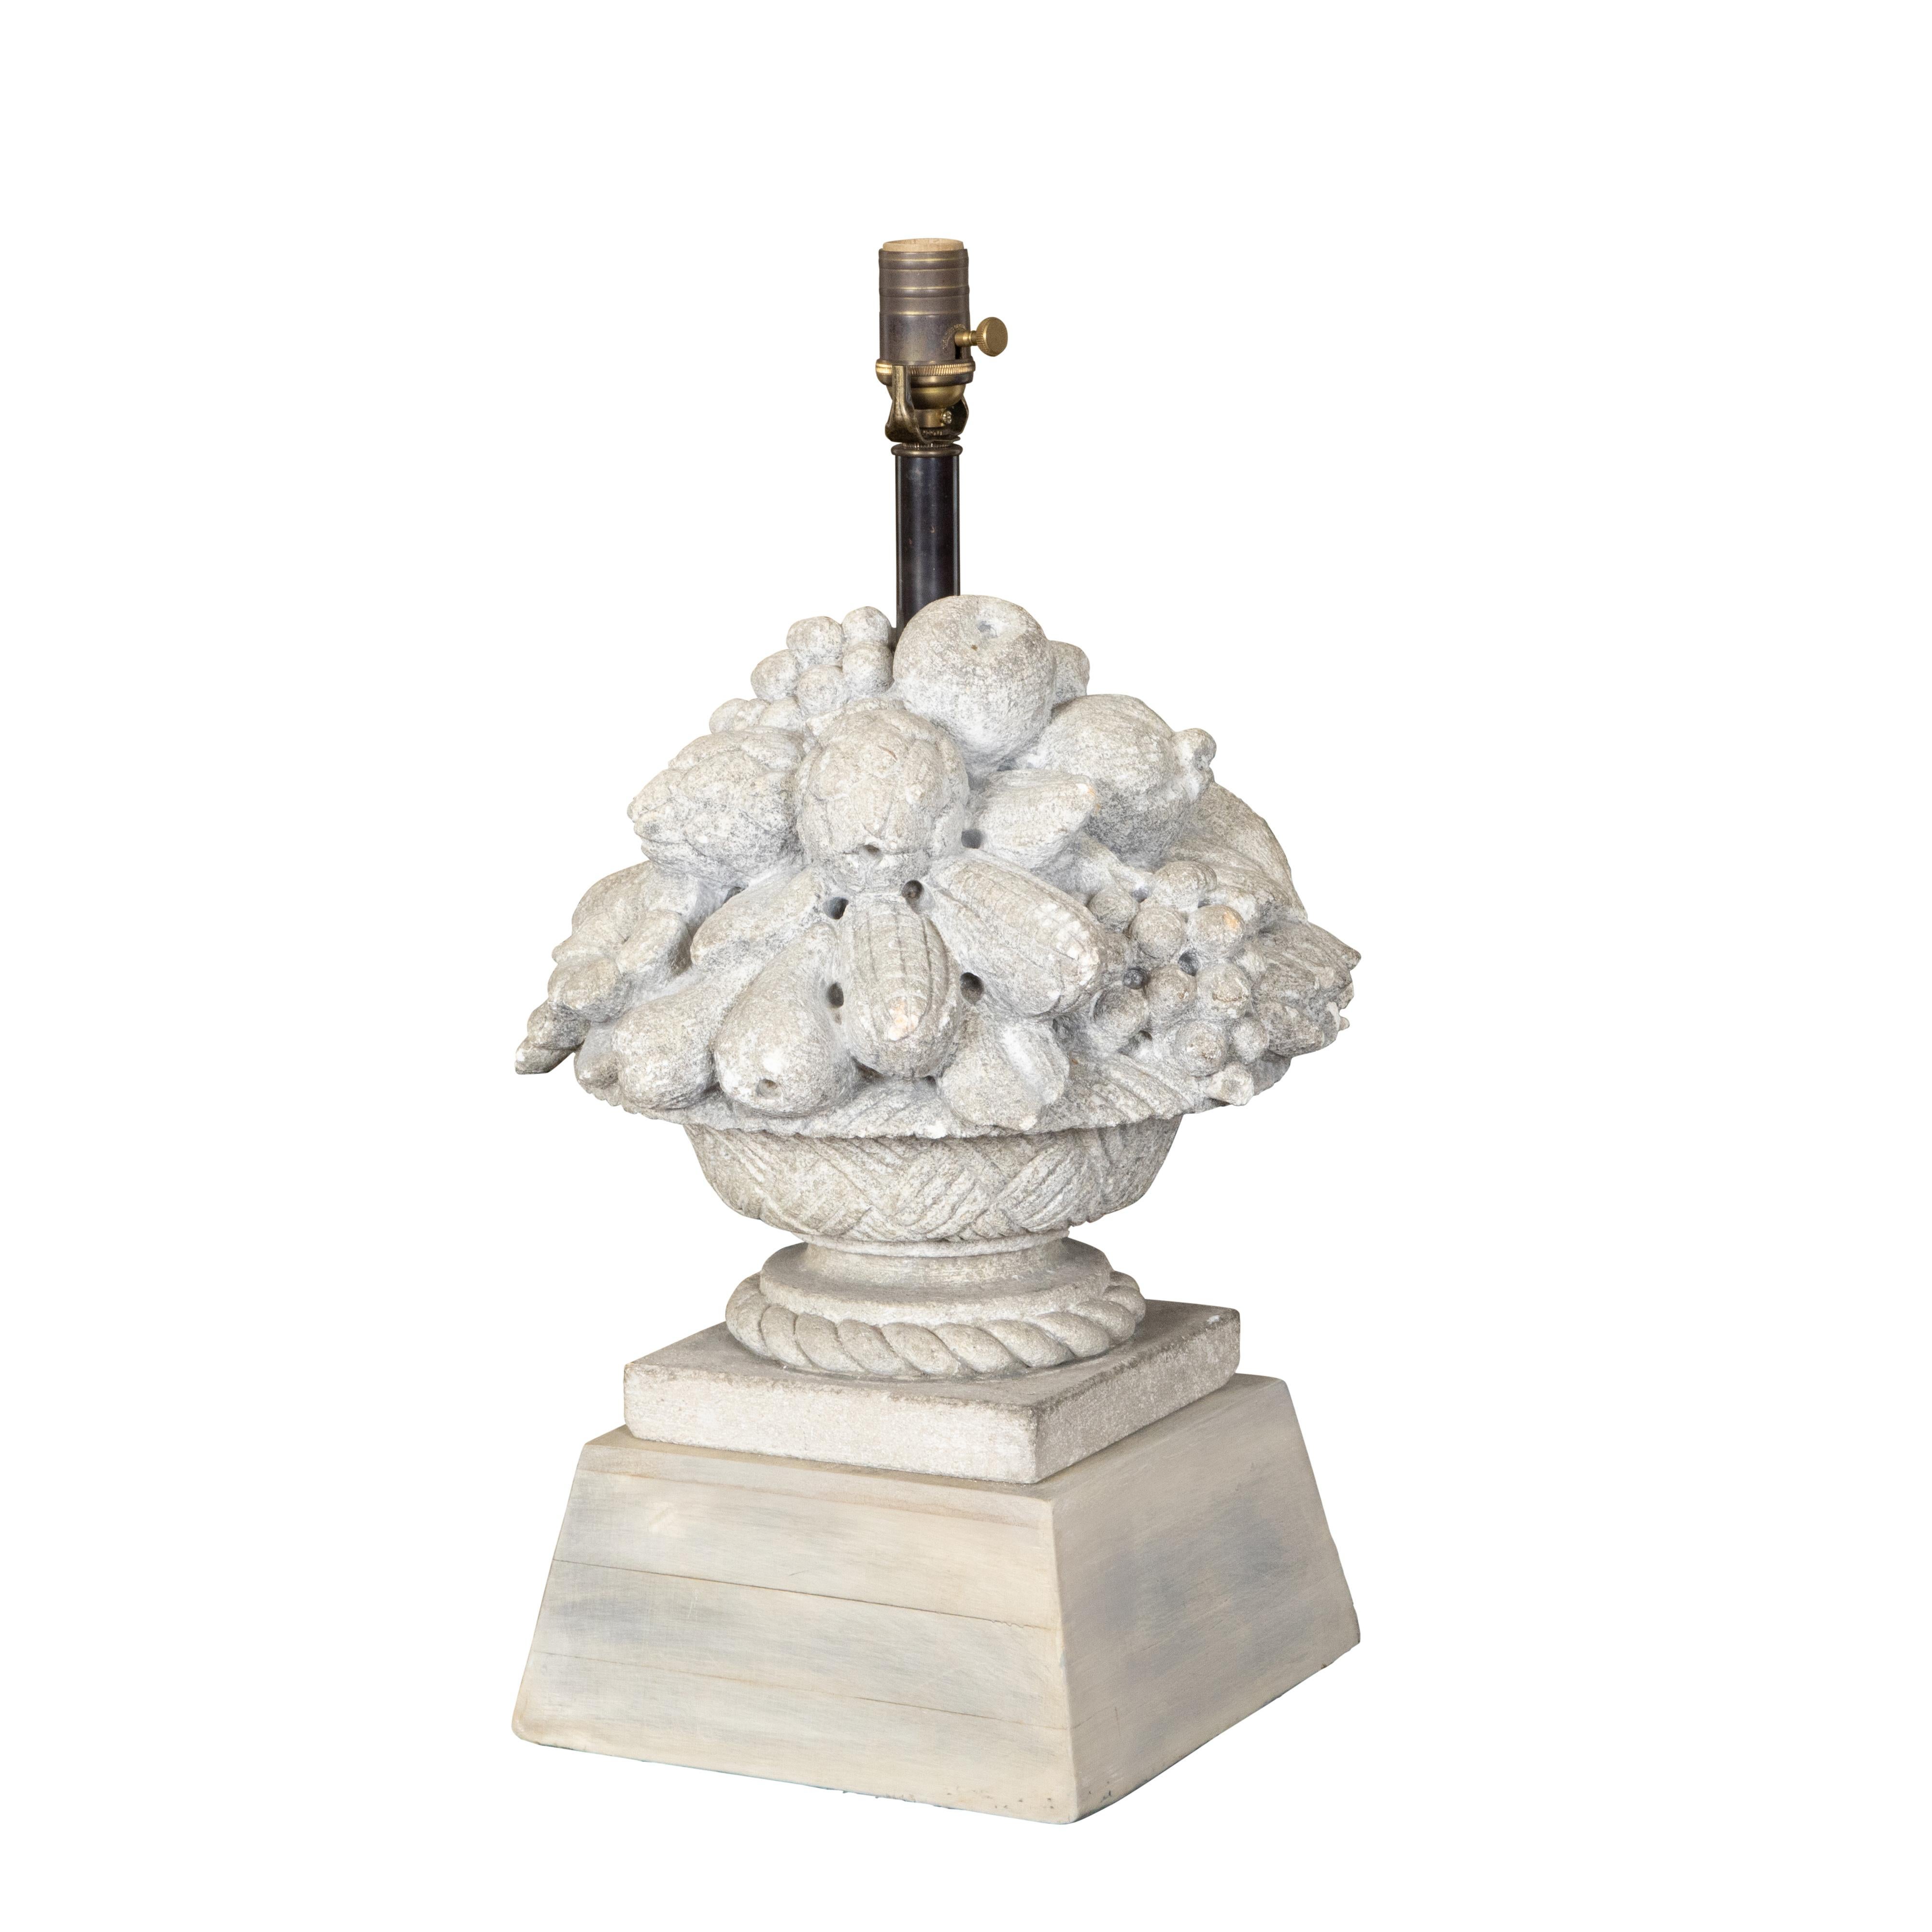 Une lampe de table en pierre sculptée française du milieu du 20ème siècle, représentant une coupe de fruits sur un haut piédestal, câblée pour les Etats-Unis. Créée en France dans le deuxième quart du XXe siècle, cette lampe de table présente un